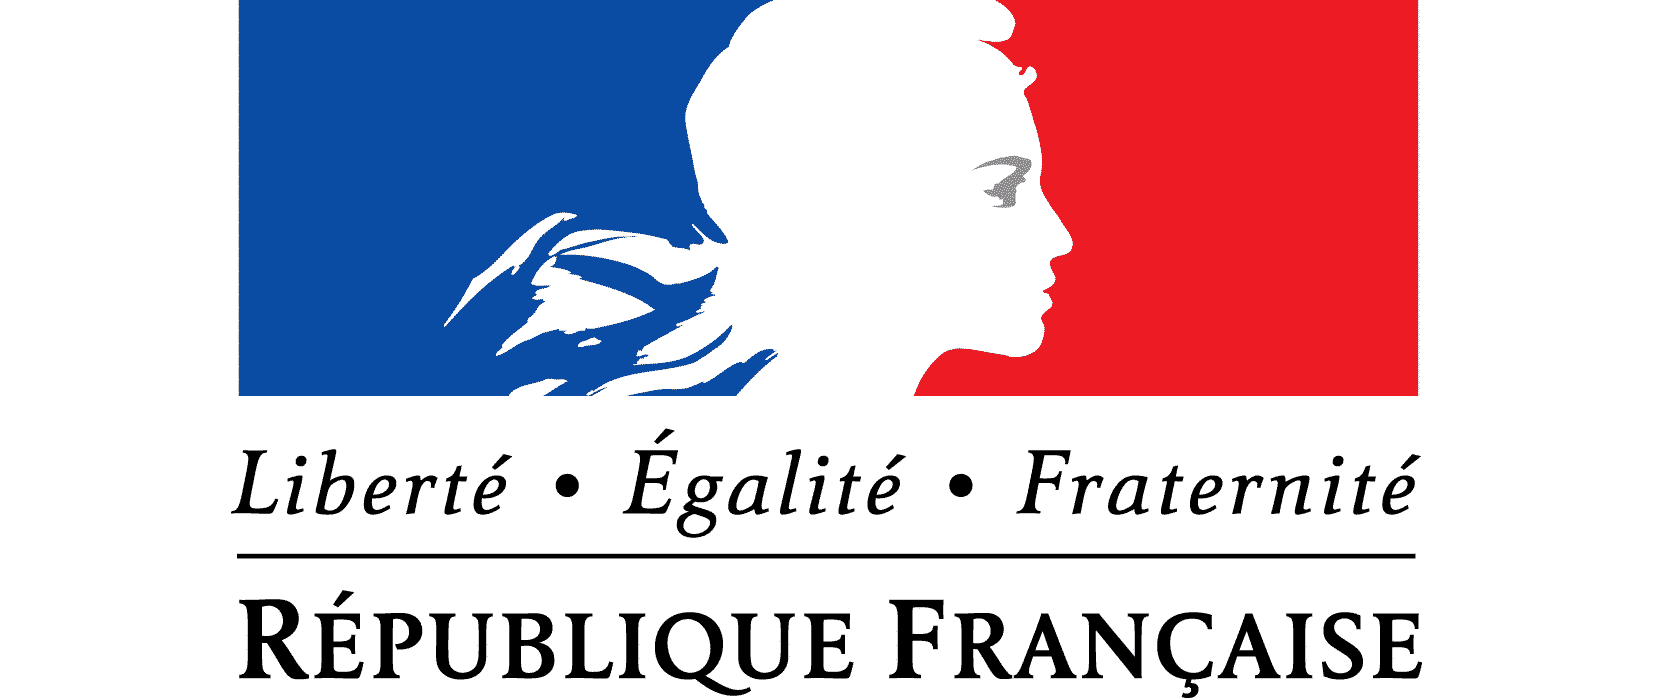 Французские девизы. Liberté égalité Fraternité плакат. Слоган Франции. Марки Republique francaise. Liberté égalité Fraternité Татуировка.